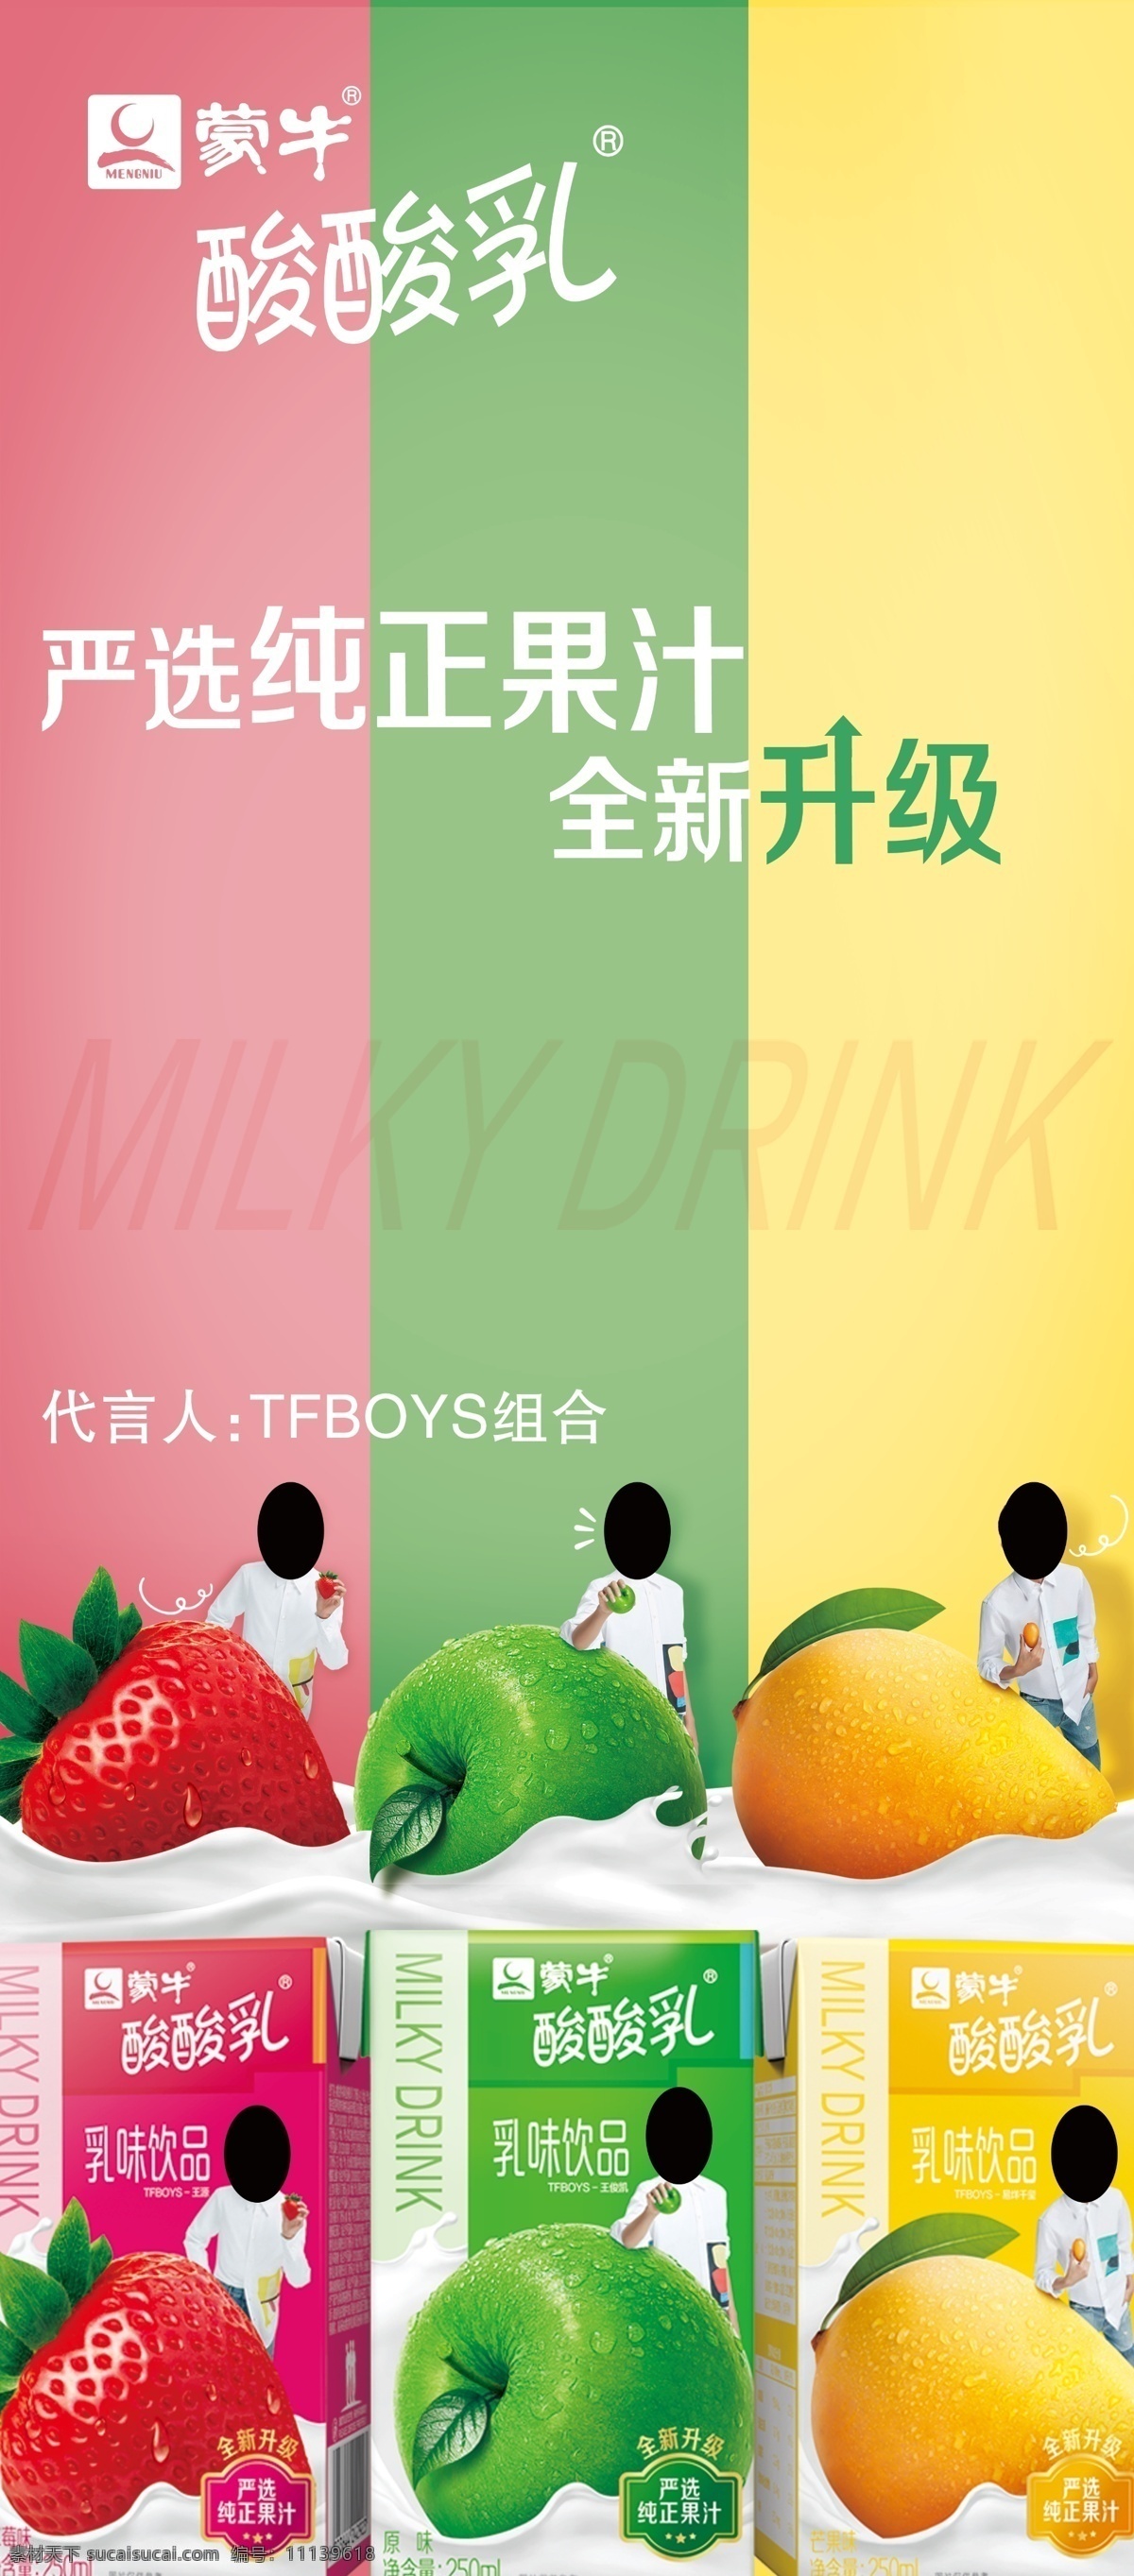 蒙牛酸酸乳 蒙牛 酸酸乳 牛奶 酸奶 乳味饮品 tfboys 组合 原味 莓味 芒果味 展架 宣传海报 分层